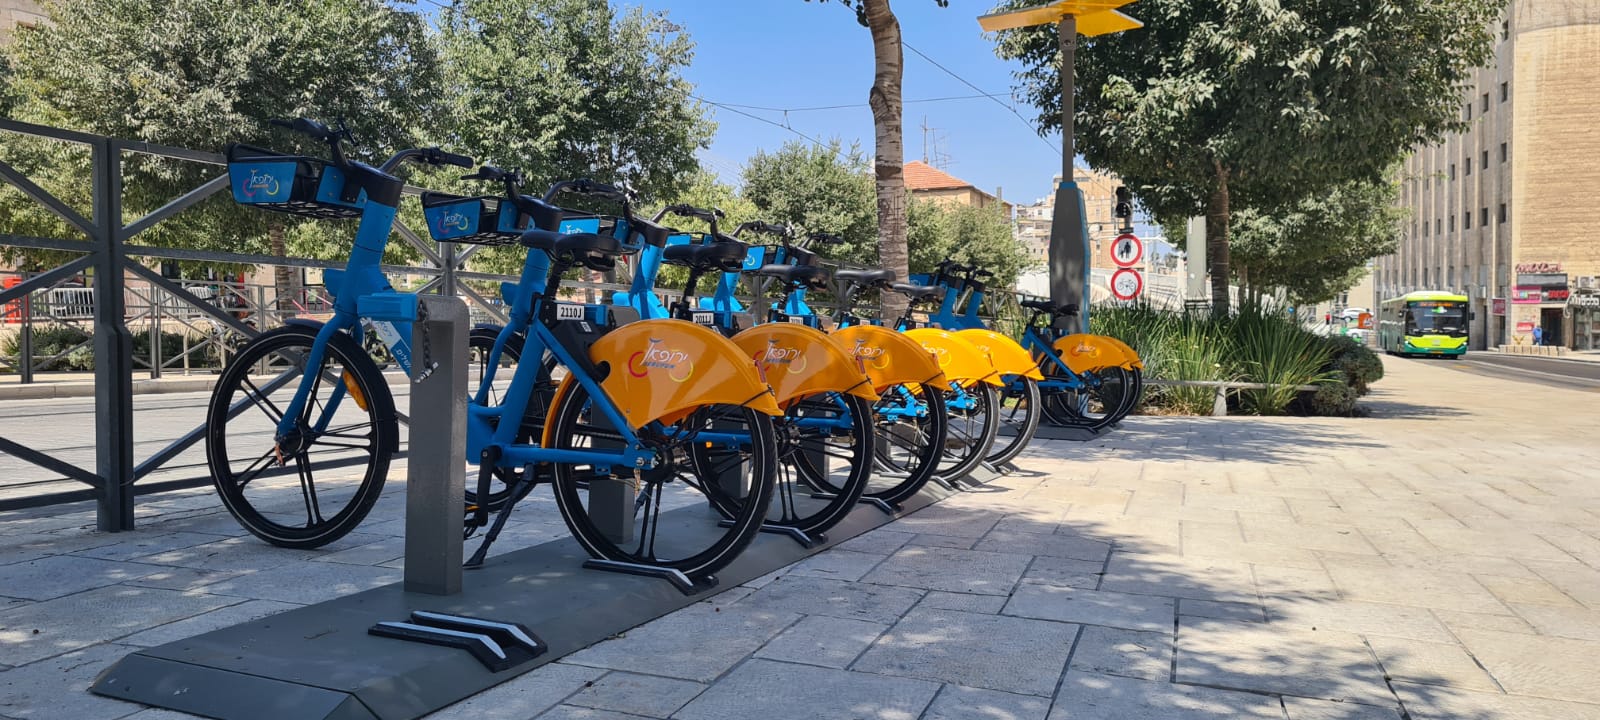 שופינג באופניים – קניון הדר ירושלים משיק תחנת עגינה להשכרת אופניים חשמליים